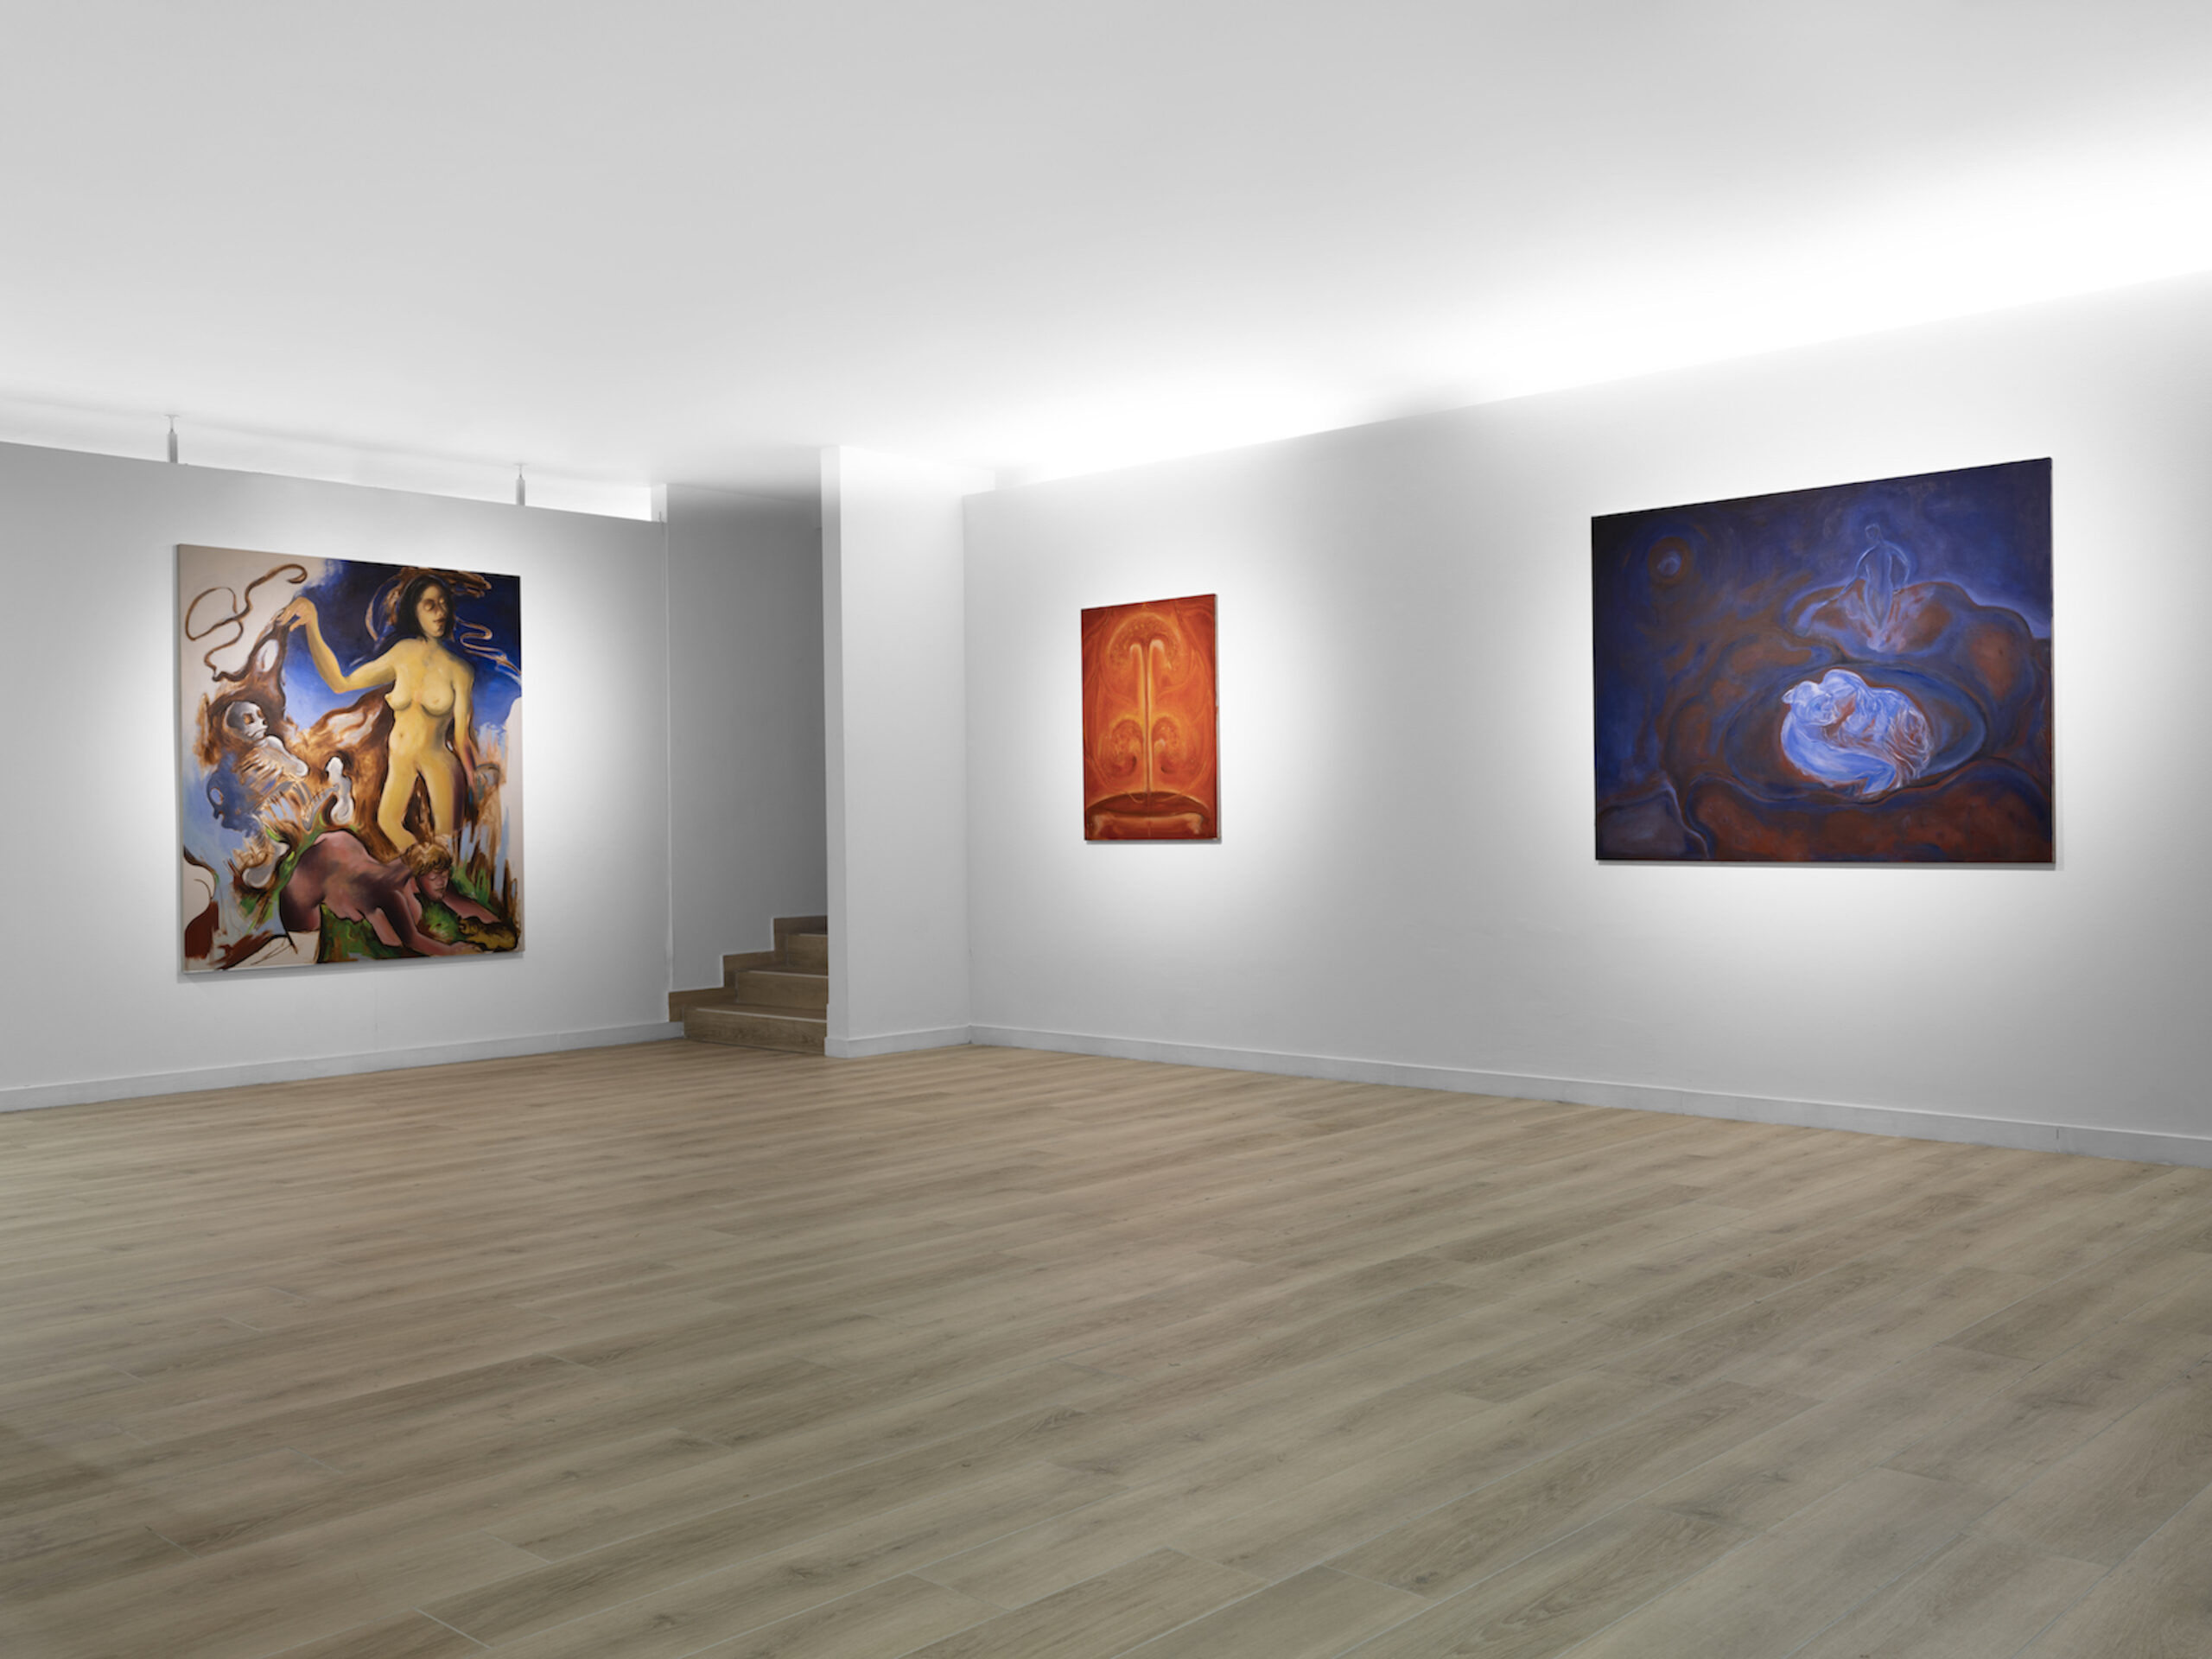 Silvia Paci, Danza #3, 2022 Oil on canvas, 170x150 cm || Salomè Wu, Bliss, 2021 Oil on canvas, 76x101 cm || Salomè Wu, Hidden in the Warmth of Rafflesia, 2020 Oil on canvas, 122x153 cm 